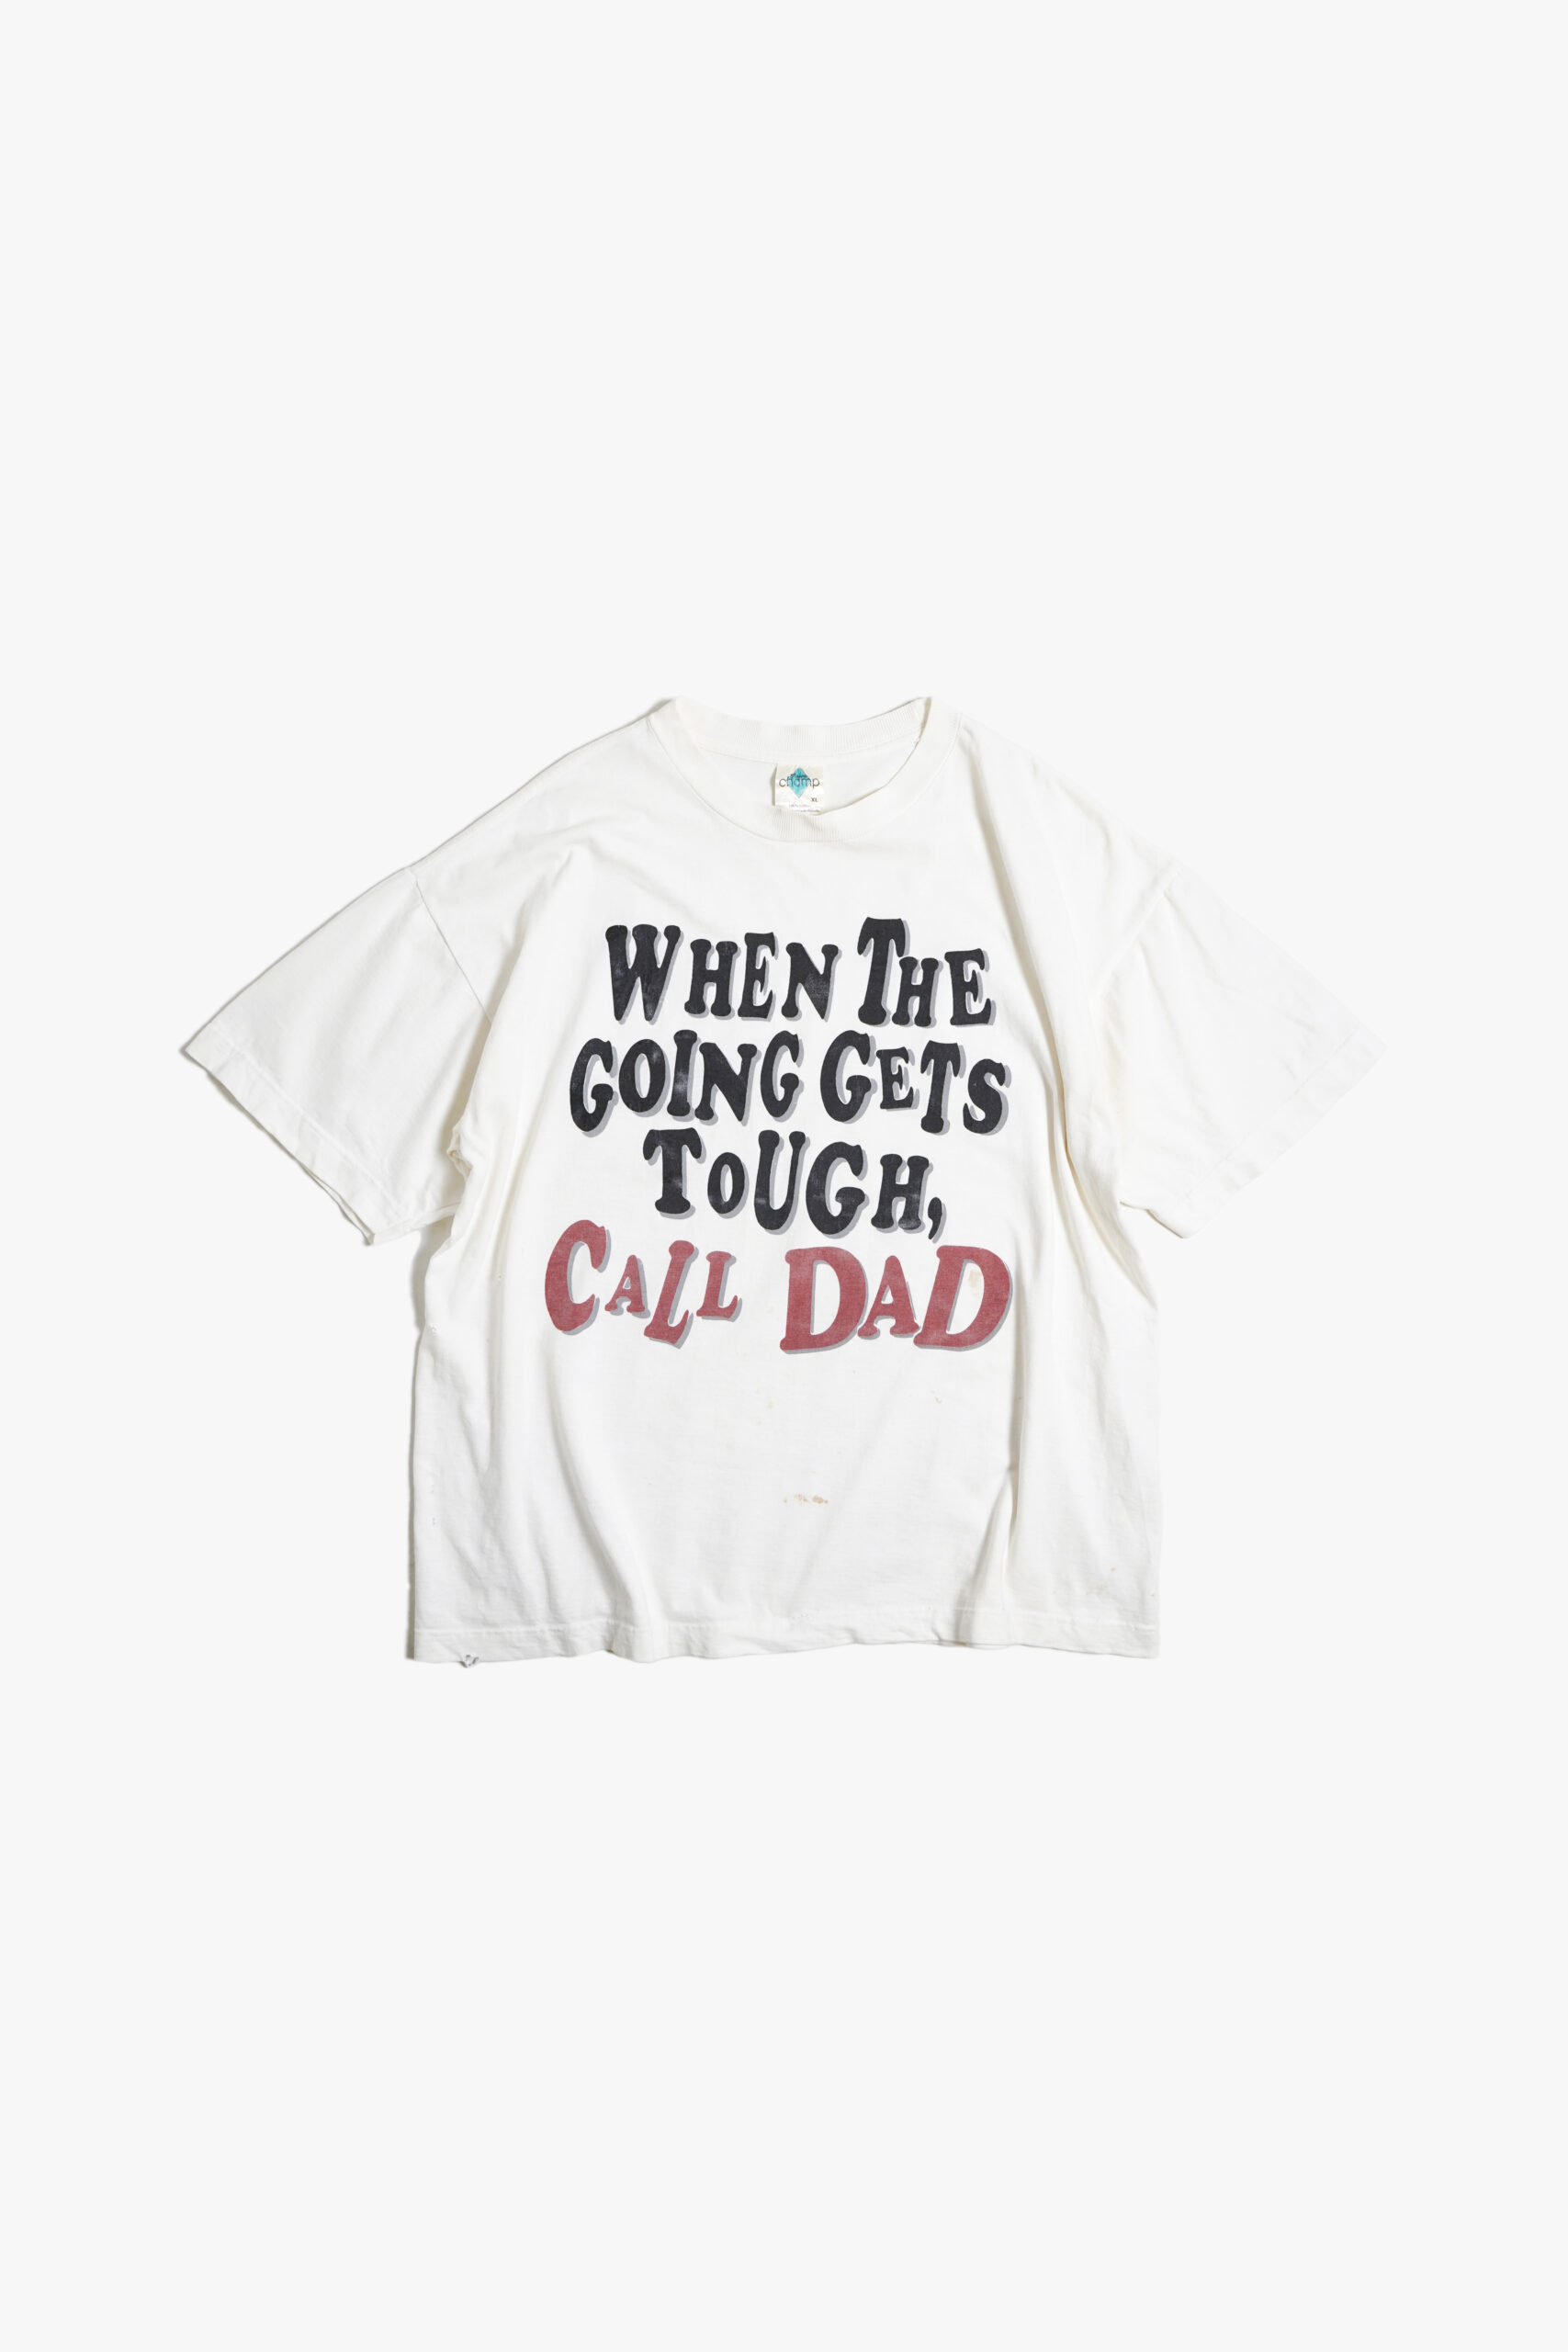 PRINTED T-SHIRTS " CALL DAD "